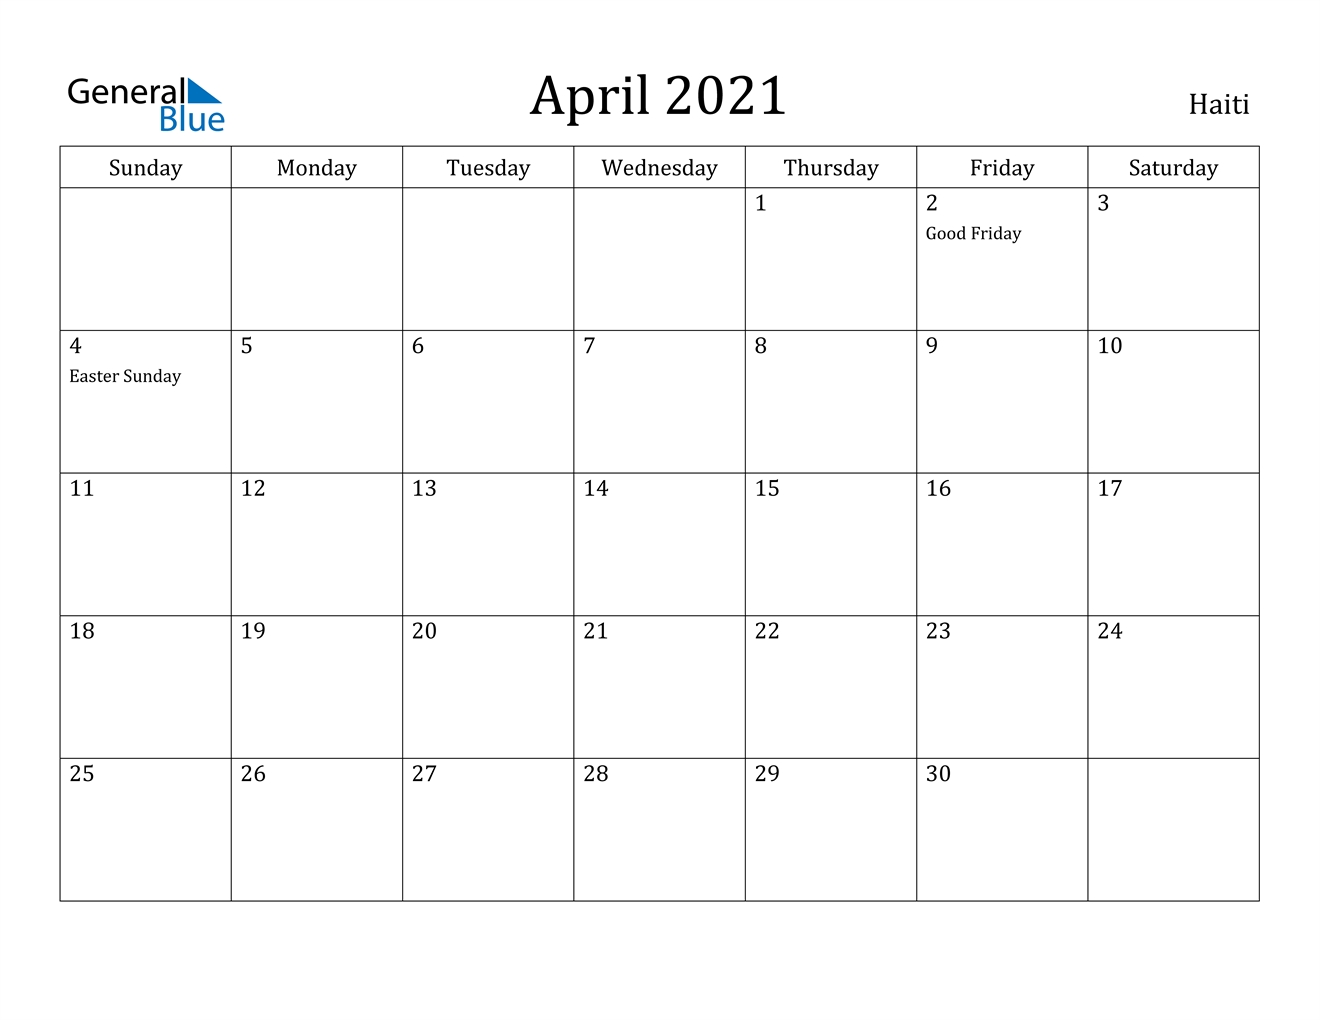 Haiti April 2021 Calendar With Holidays